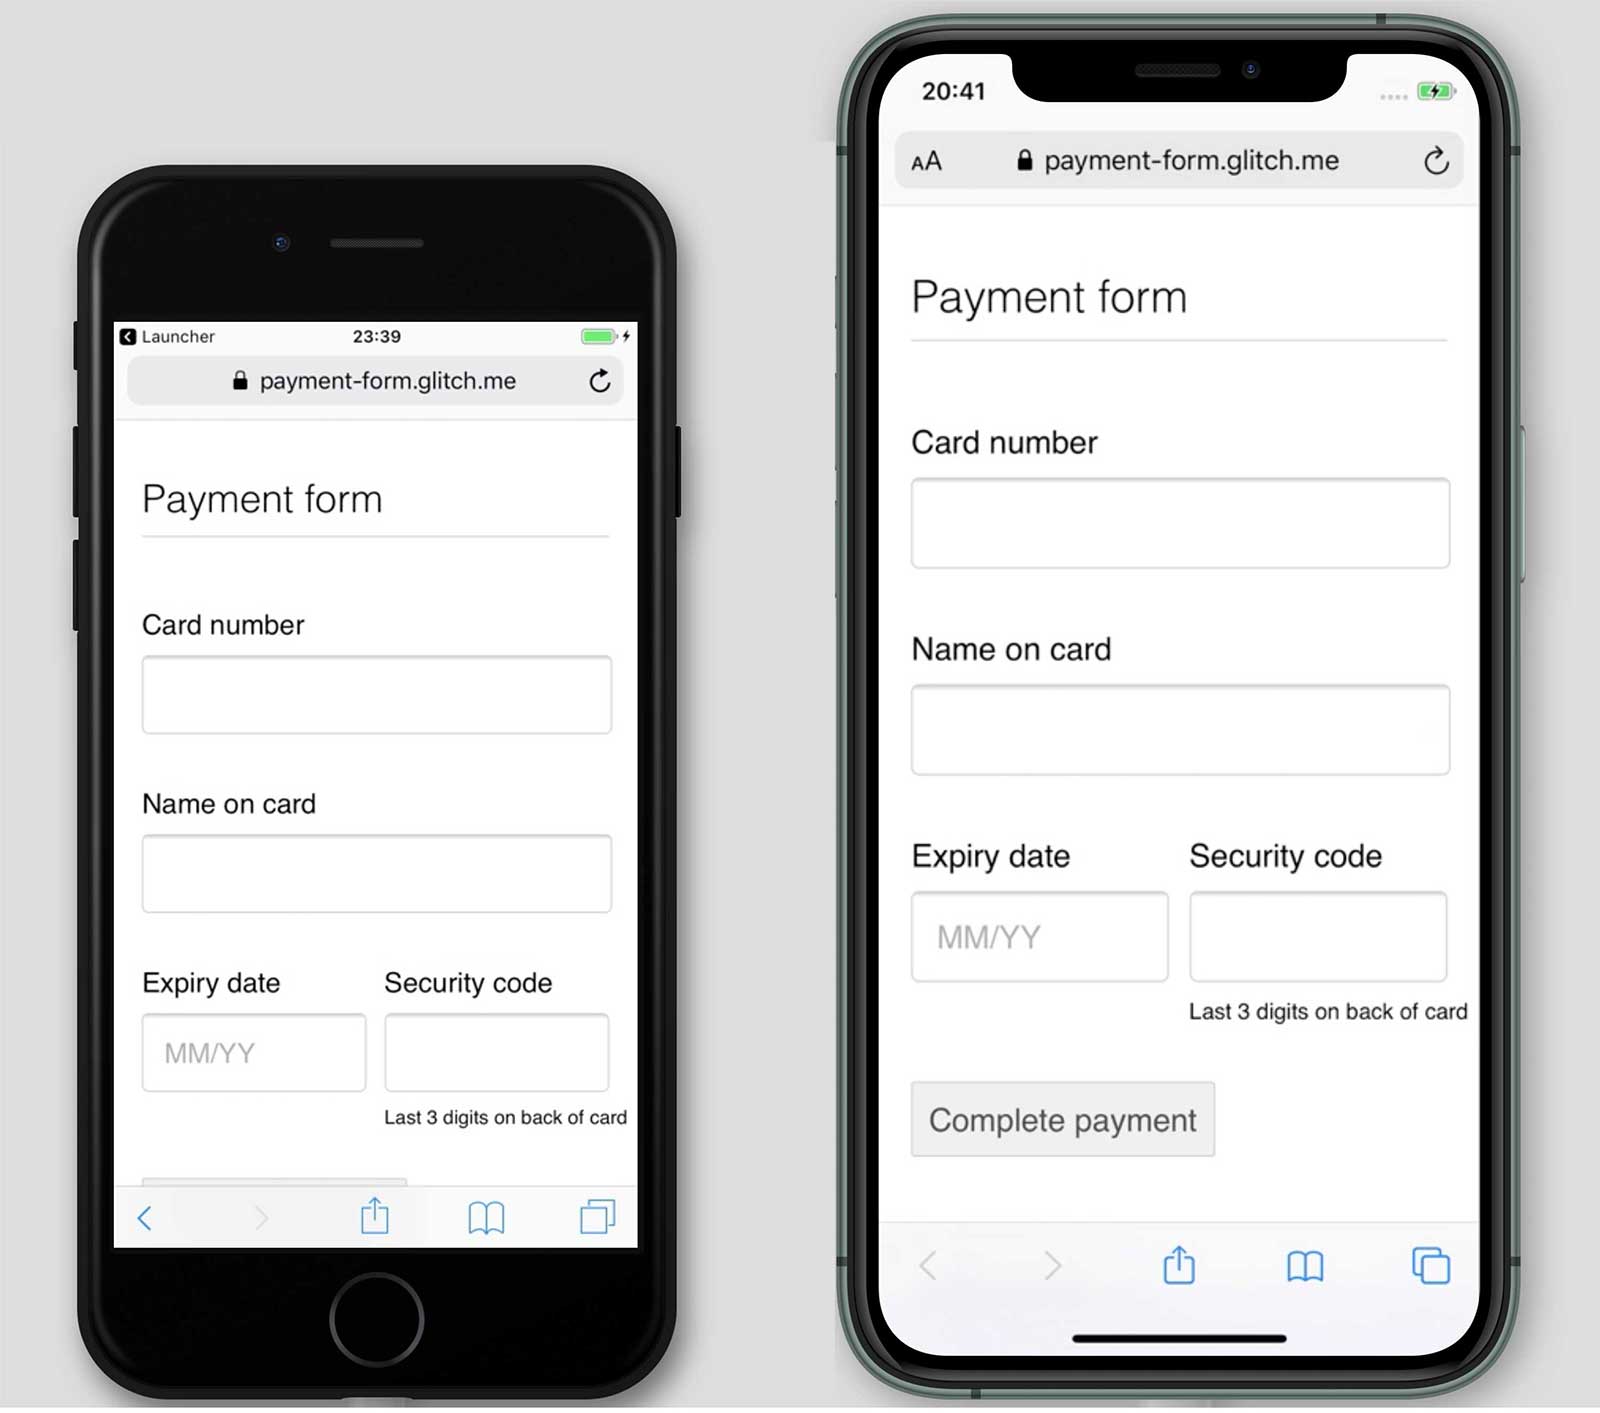 لقطات شاشة لطريقة الدفع payment-form.glitch.me على هاتفَي iPhone 7 وiPhone 11 يظهر زر &quot;إكمال عملية الدفع&quot; على هاتف iPhone 11 وليس على هاتف iPhone 11.